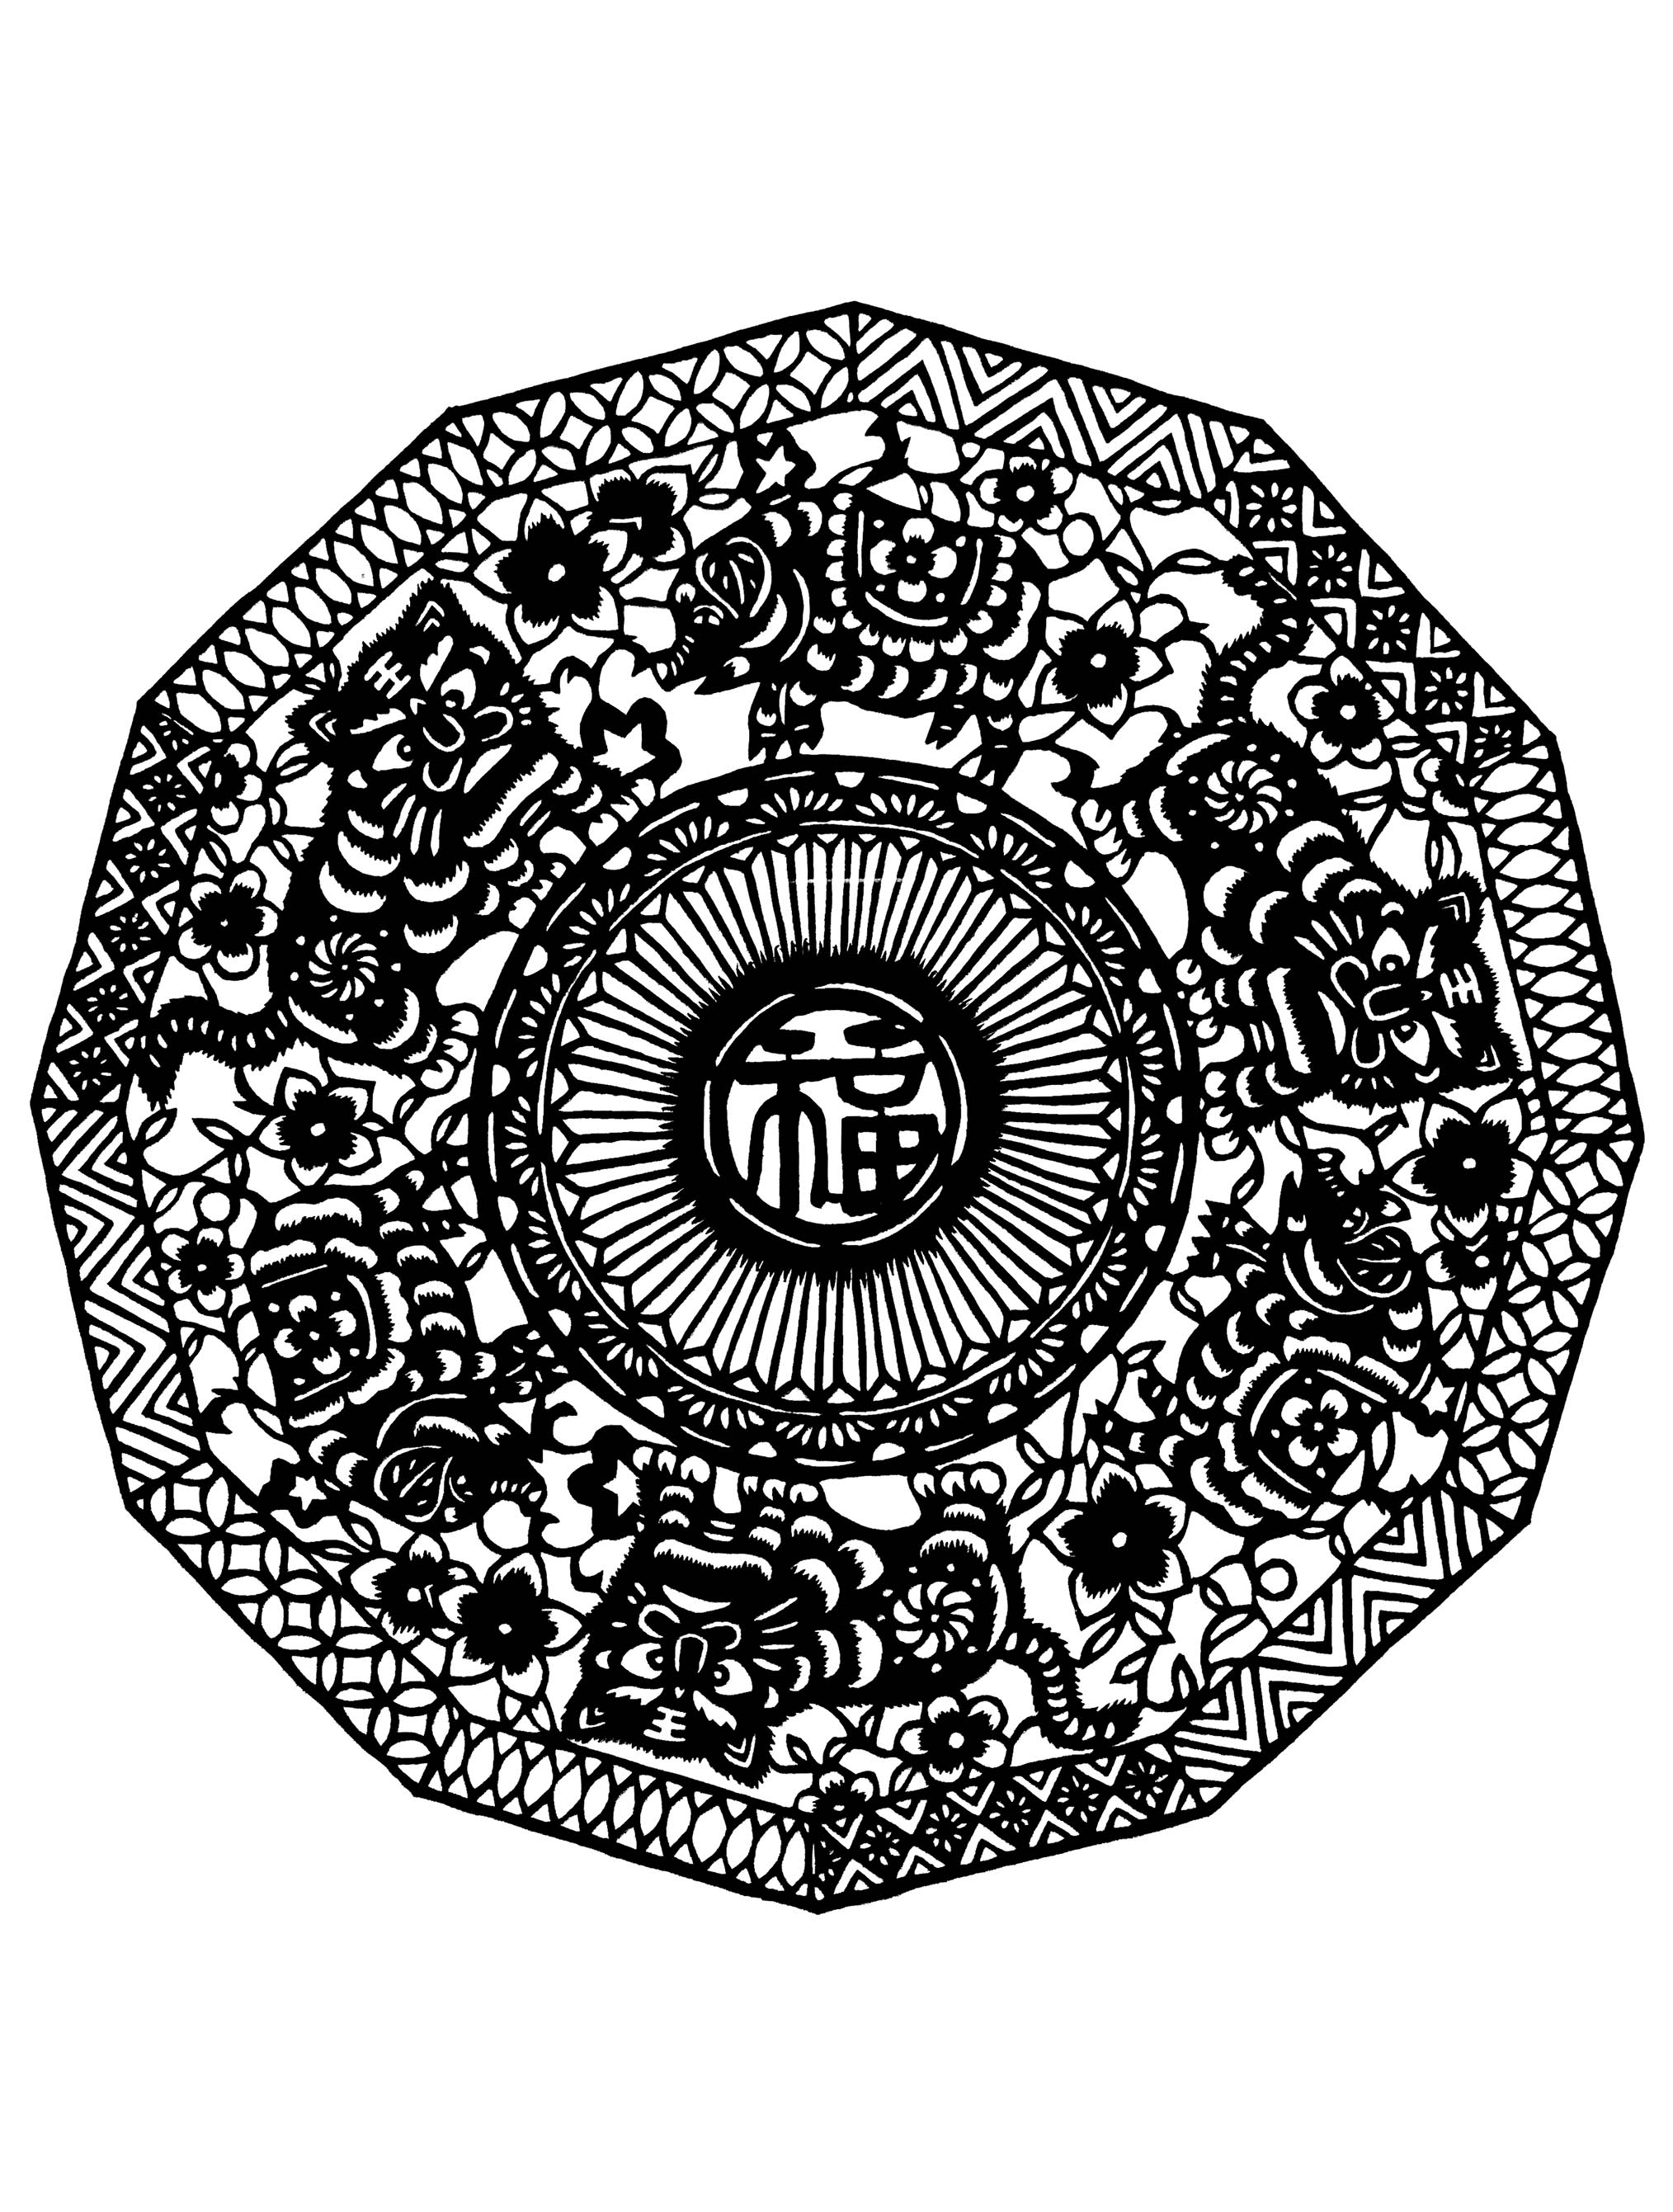 Mandala inspiré par des motifs et dessins chinois